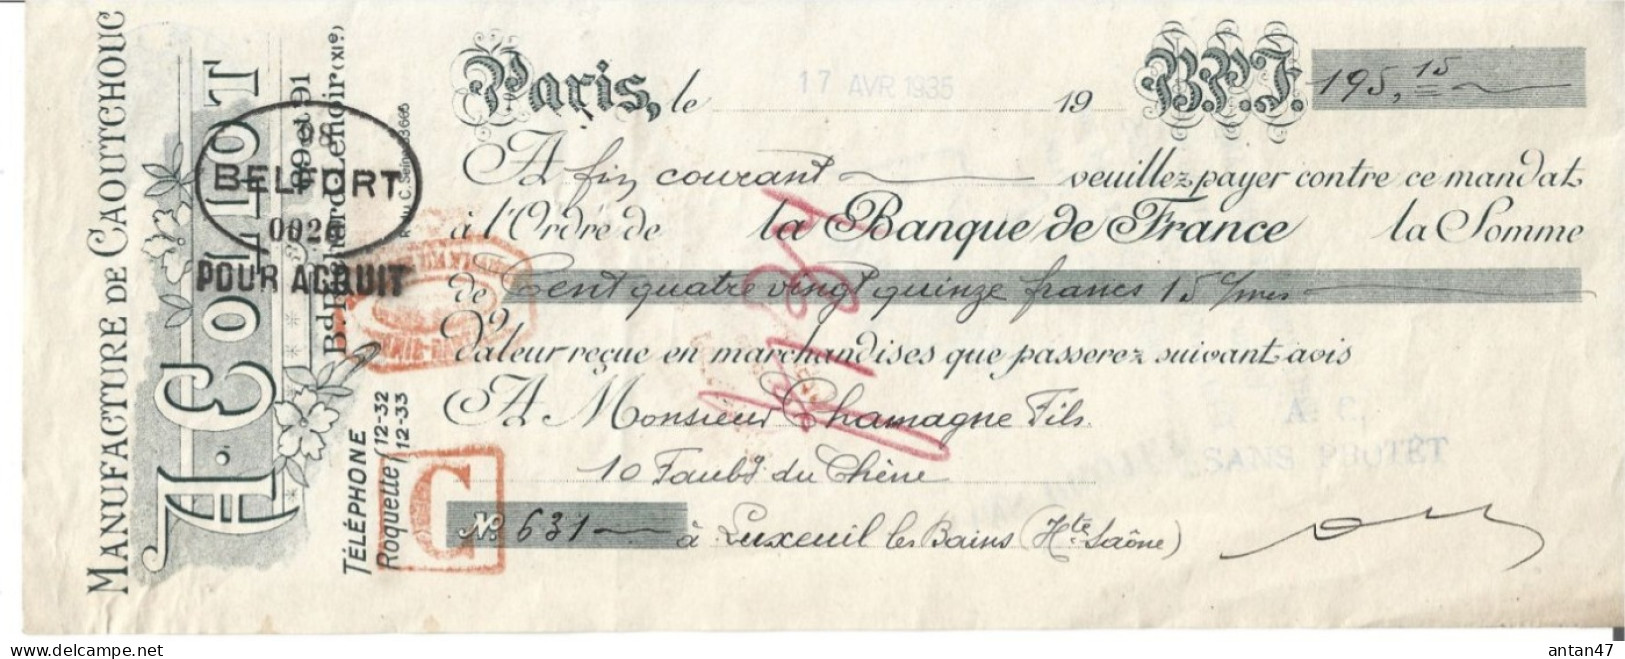 Traite Illustrée 1935 / 75011 PARIS / Manufacture De Caoutchouc COLLOT - Bills Of Exchange